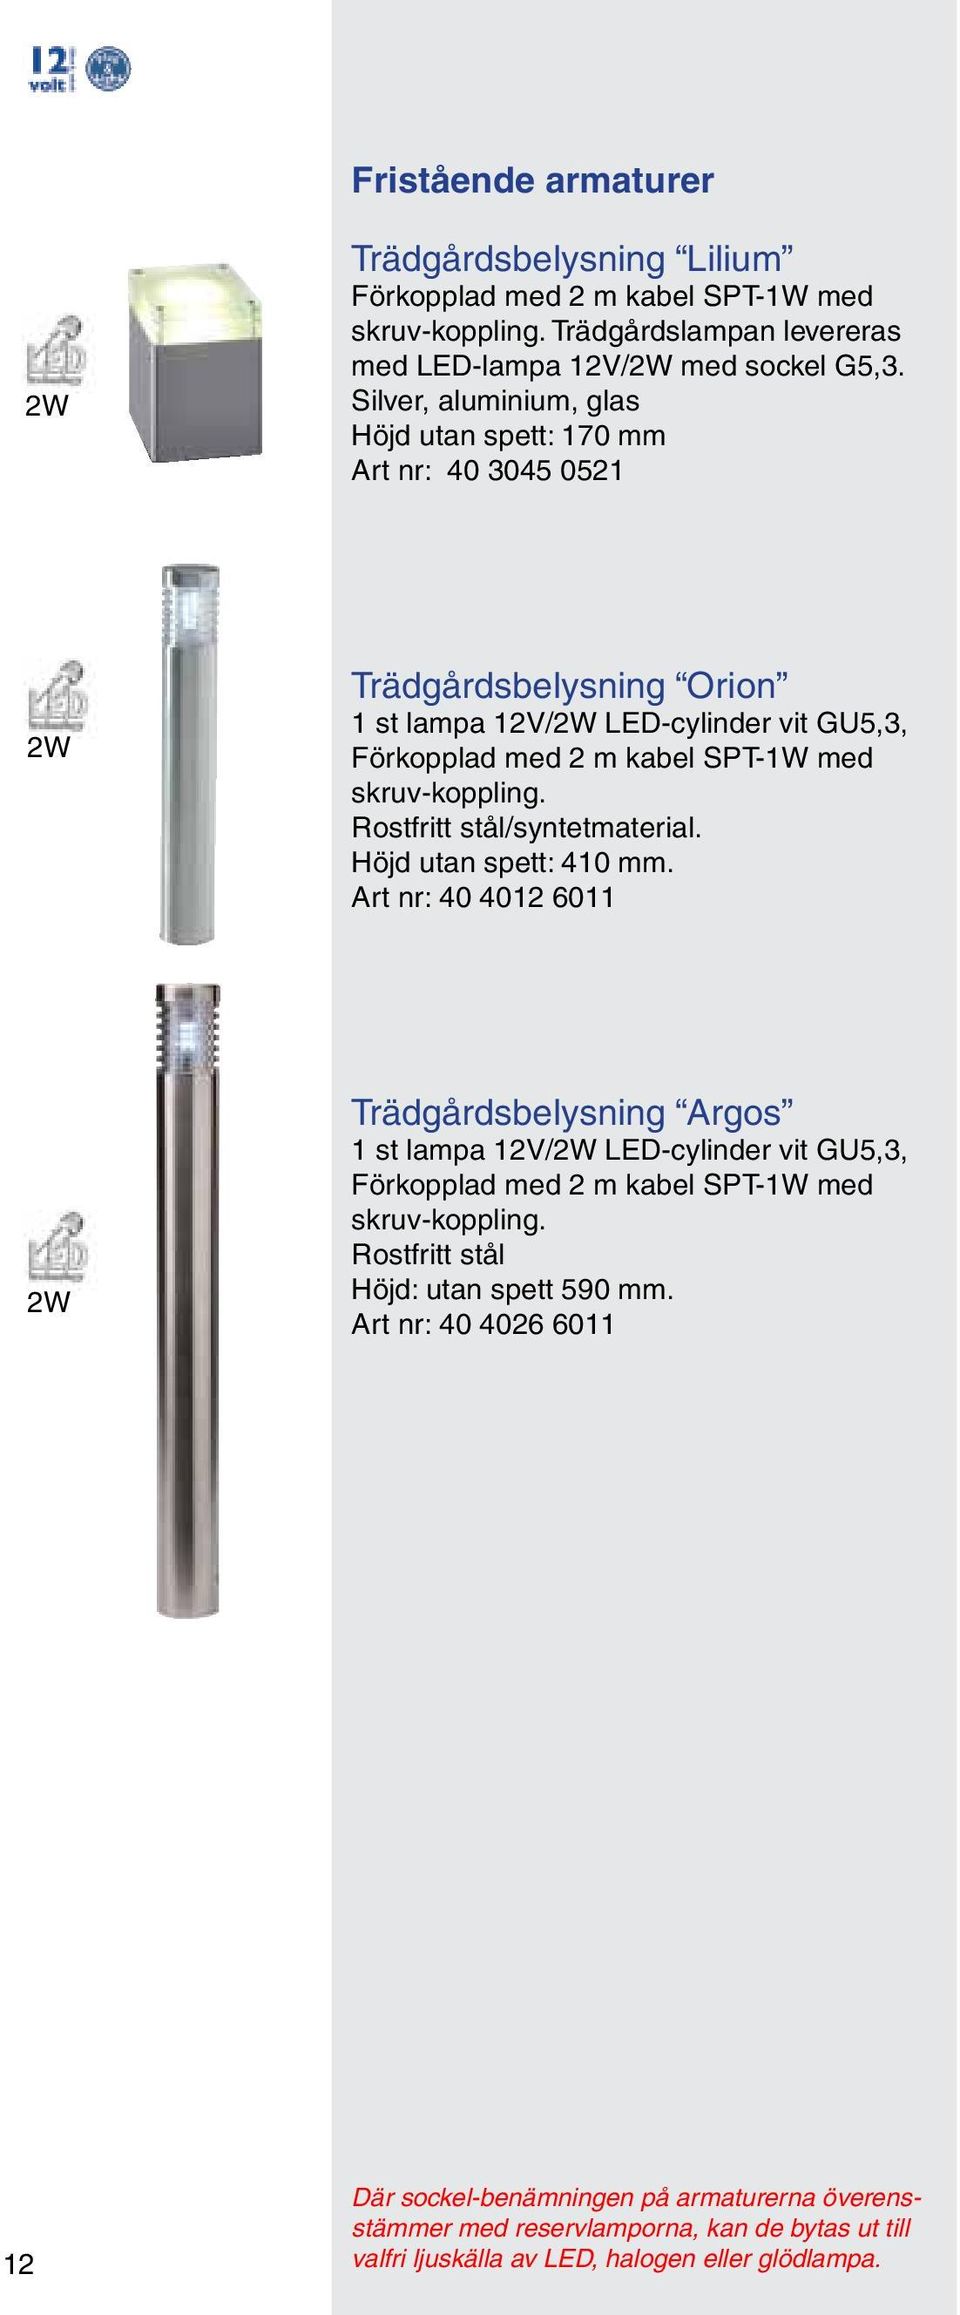 Rostfritt stål/syntetmaterial. Höjd utan spett: 410 mm. Art nr: 40 4012 6011 2W Trädgårdsbelysning Argos 1 st lampa 12V/2W LED-cylinder vit GU5,3, skruv-koppling.